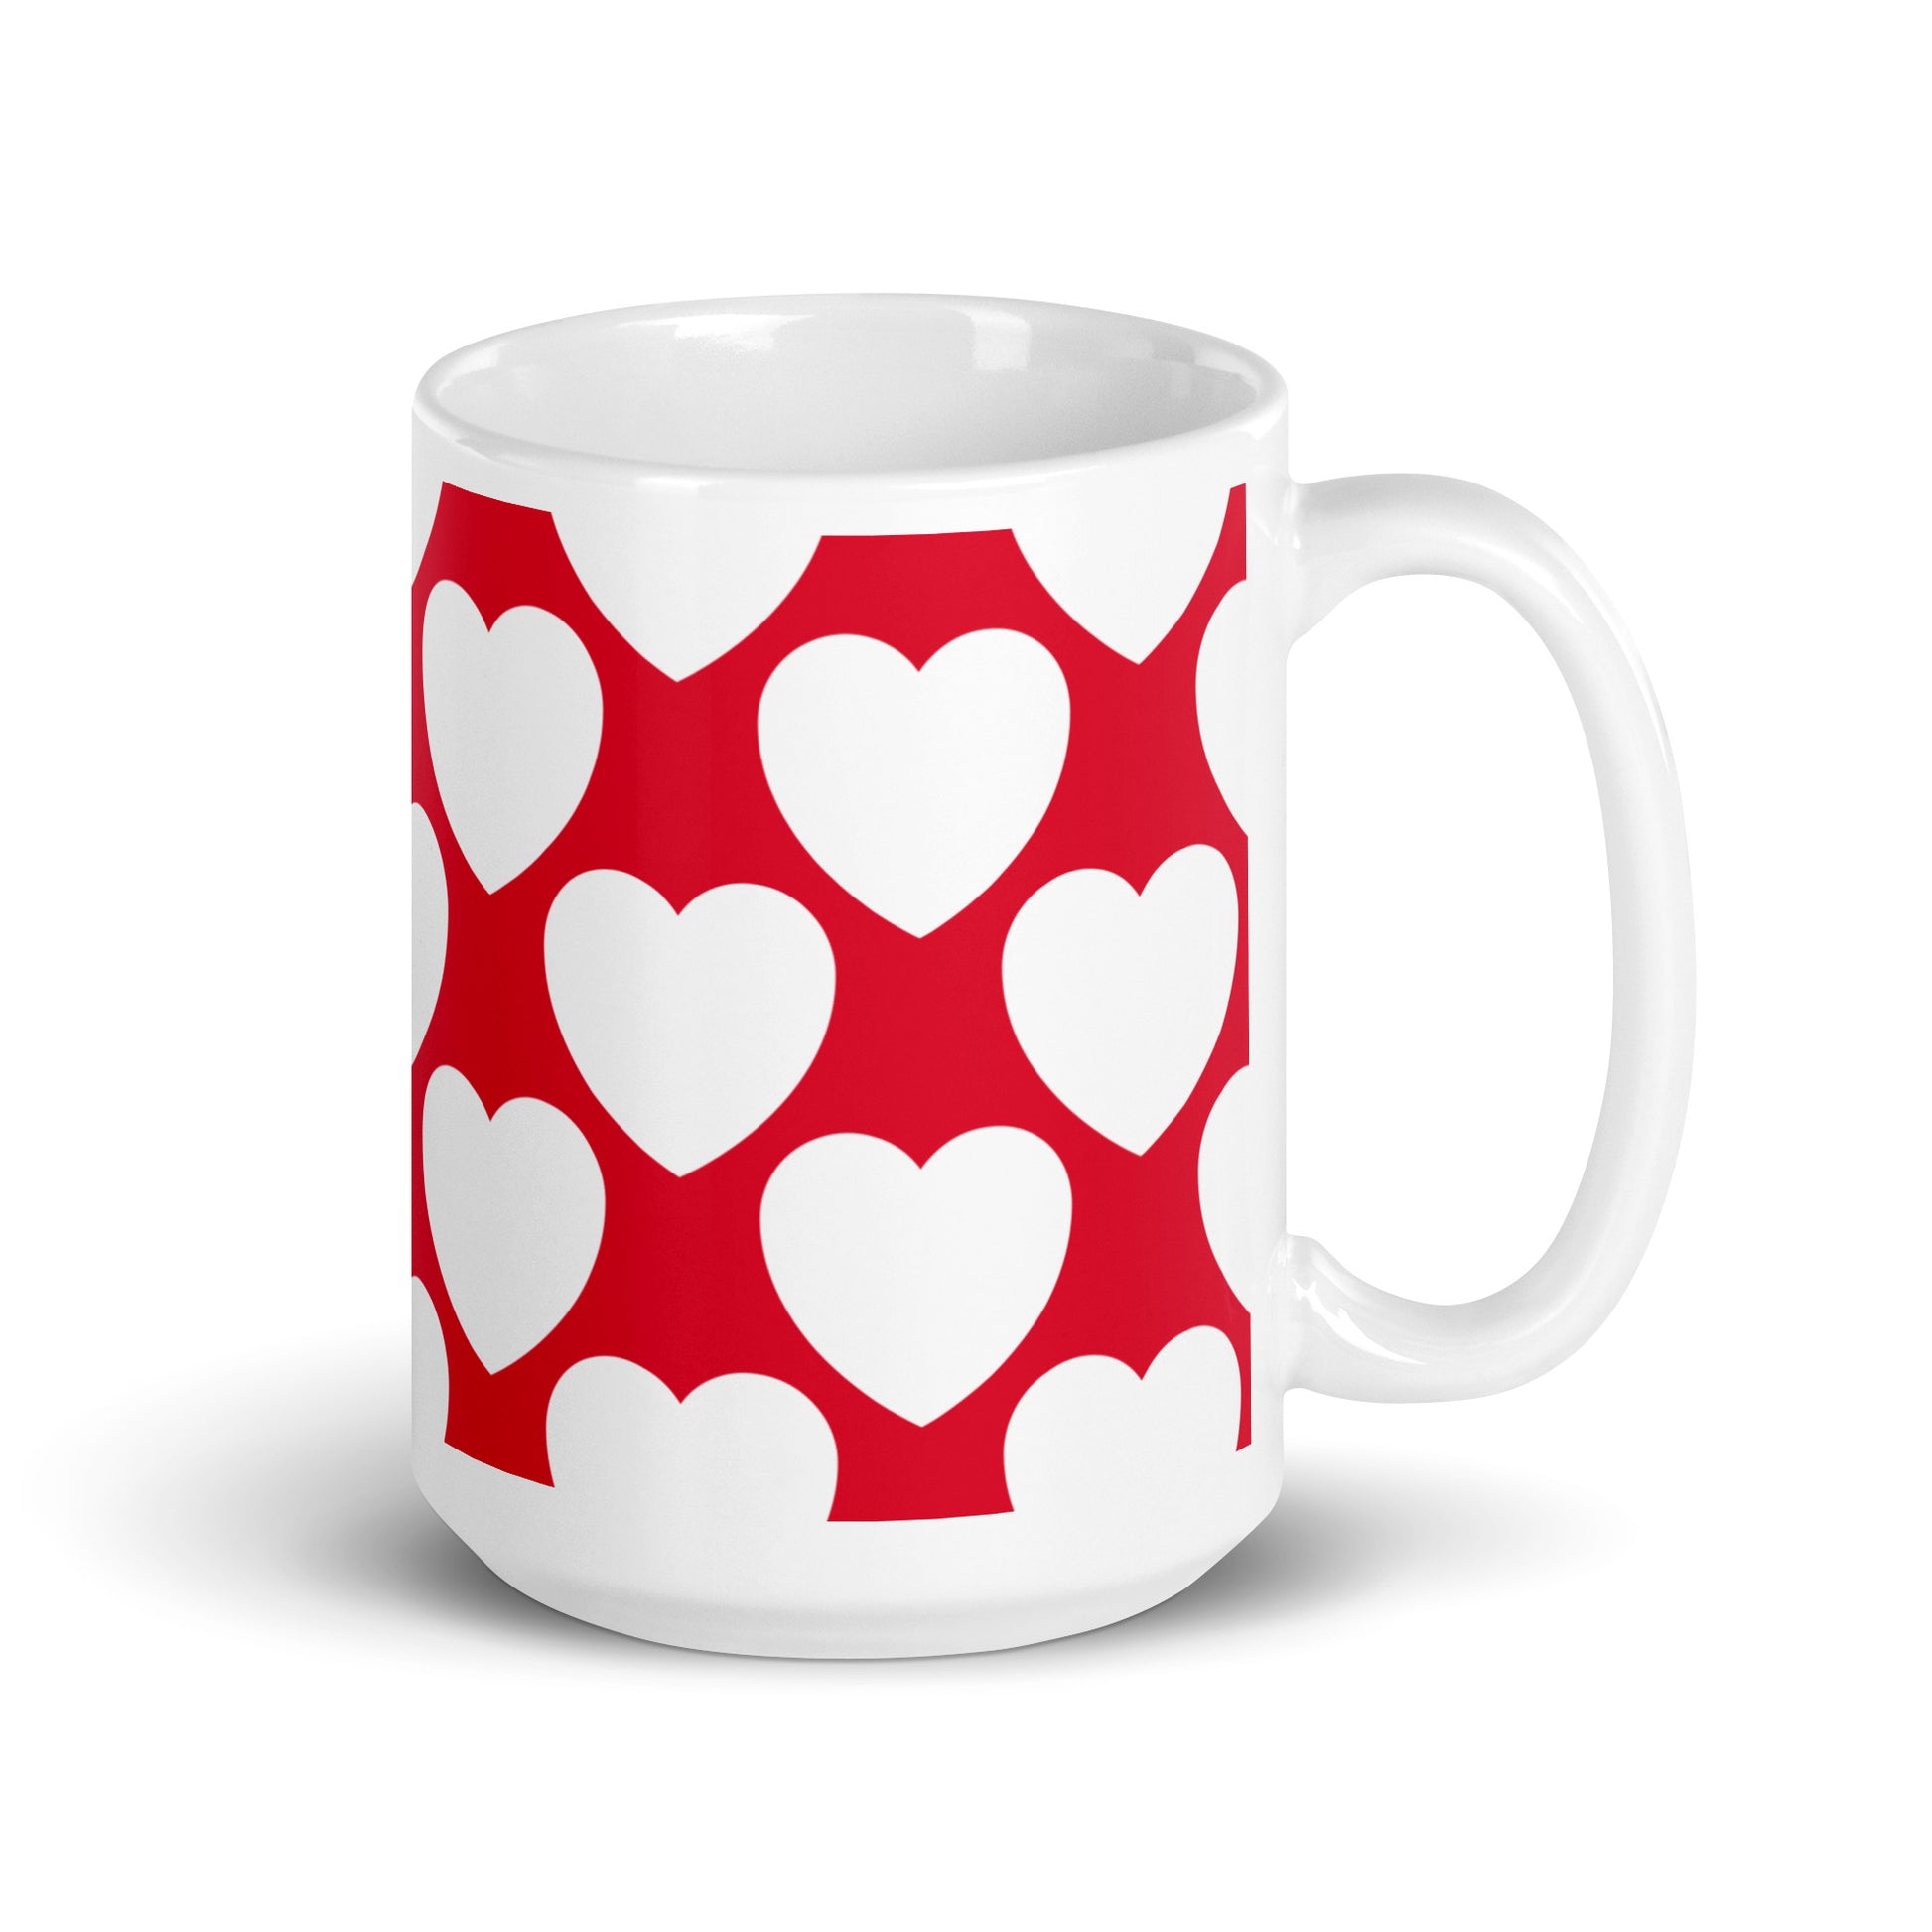 ELLIE LOVE redwhite - Ceramic Mug - SHALMIAK